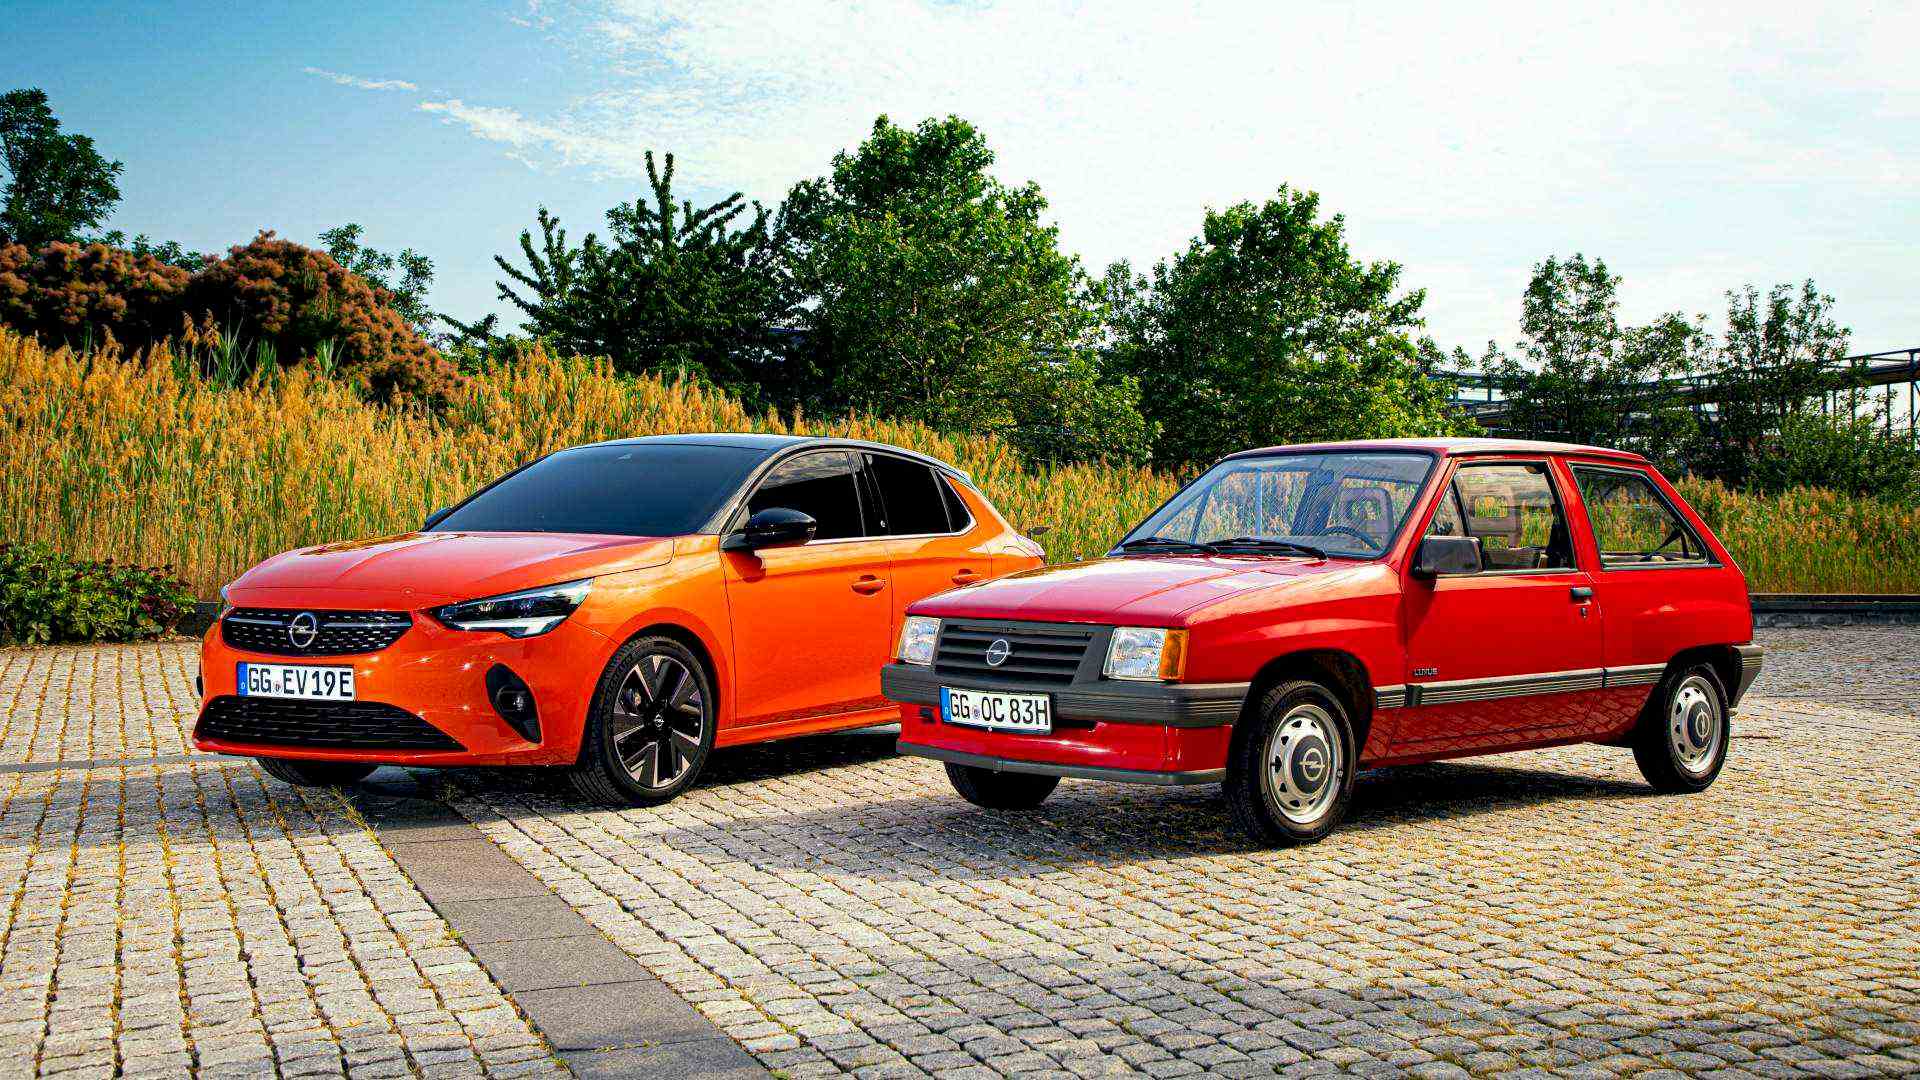 La sexta generación del Opel Corsa comienza su fabricación